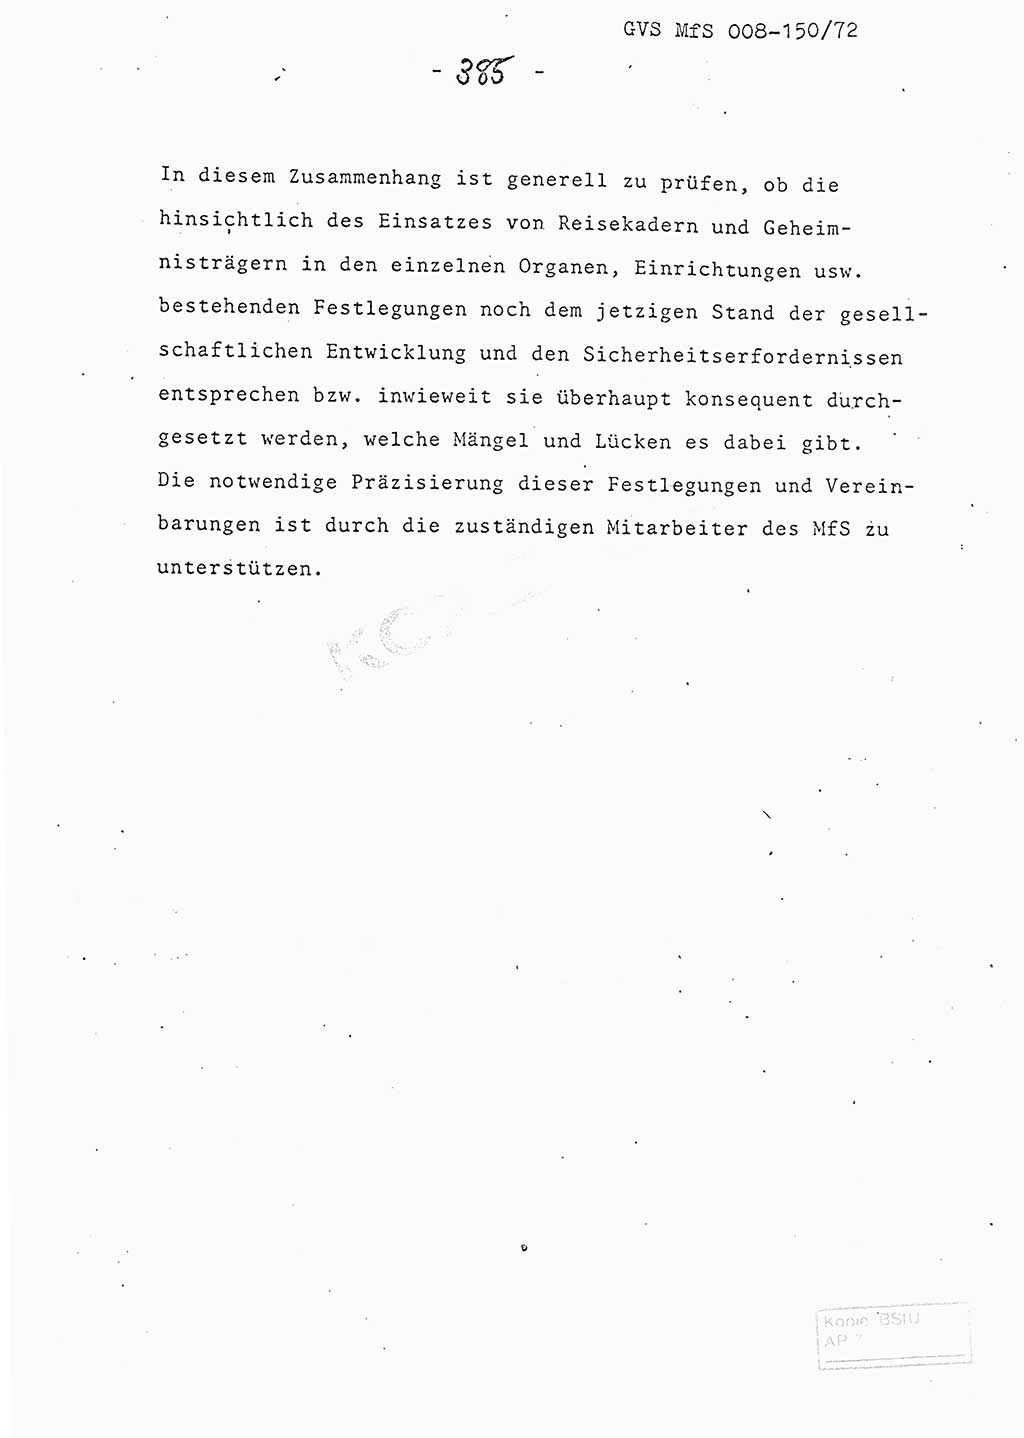 Referat (Entwurf) des Genossen Minister (Generaloberst Erich Mielke) auf der Dienstkonferenz 1972, Ministerium für Staatssicherheit (MfS) [Deutsche Demokratische Republik (DDR)], Der Minister, Geheime Verschlußsache (GVS) 008-150/72, Berlin 25.2.1972, Seite 385 (Ref. Entw. DK MfS DDR Min. GVS 008-150/72 1972, S. 385)